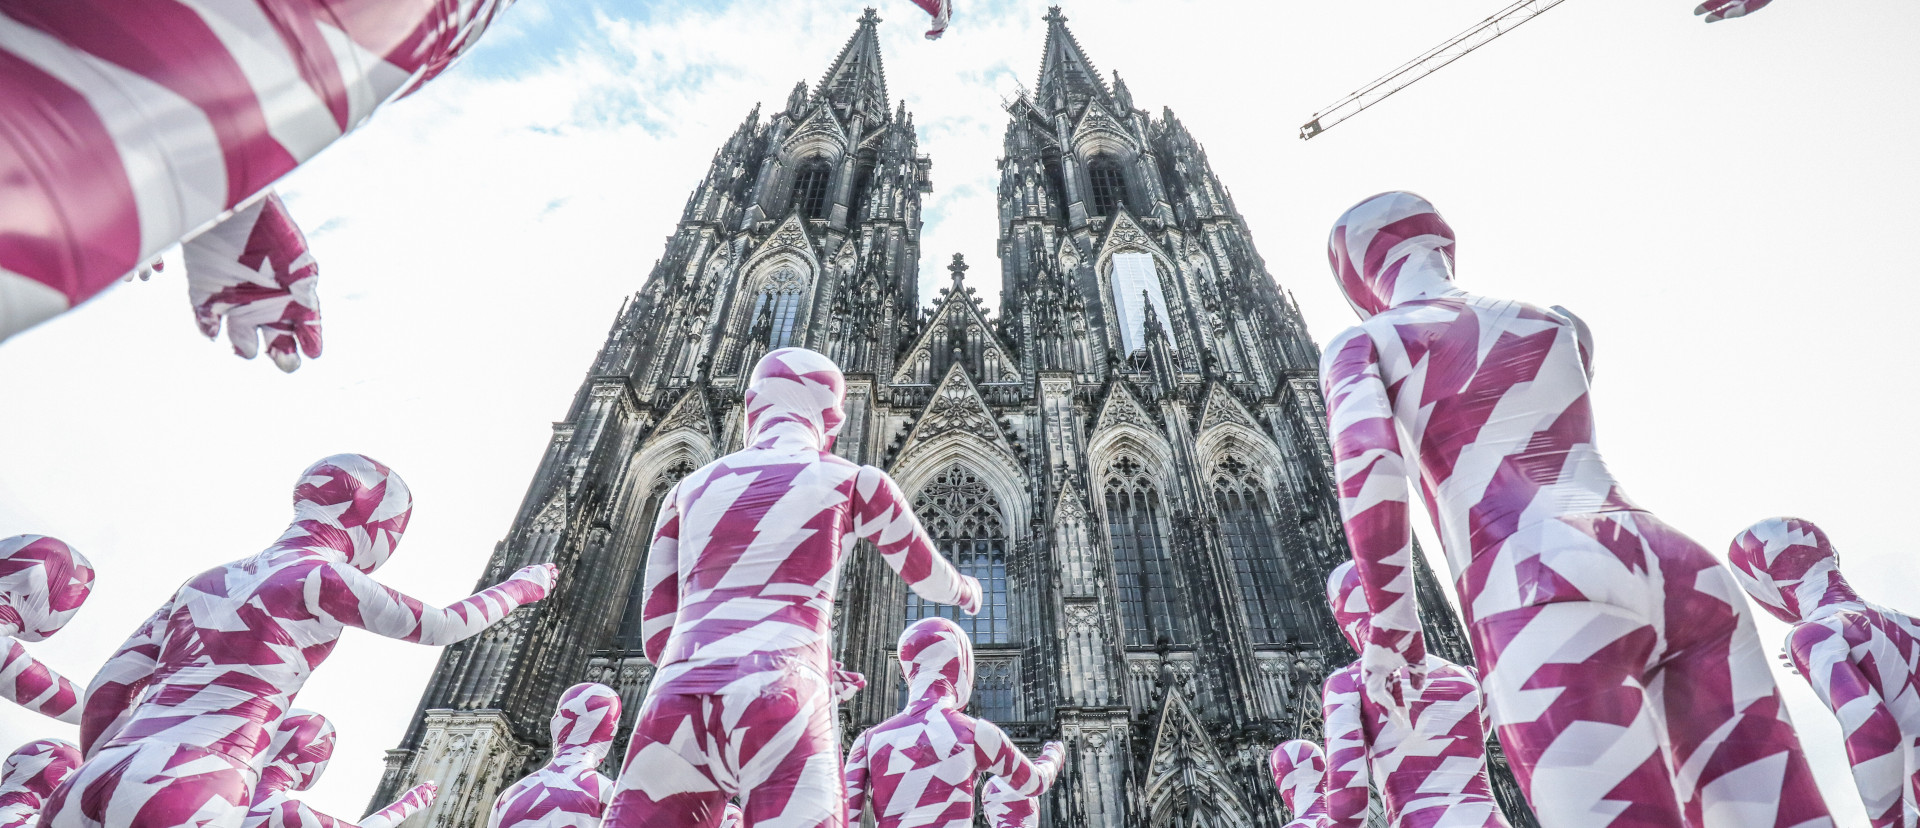 Mahnmal des Missbrauchs: 333 in Weiss und Purpur gekleideten Kinder-Schaufensterpuppen vor dem Kölner Dom.